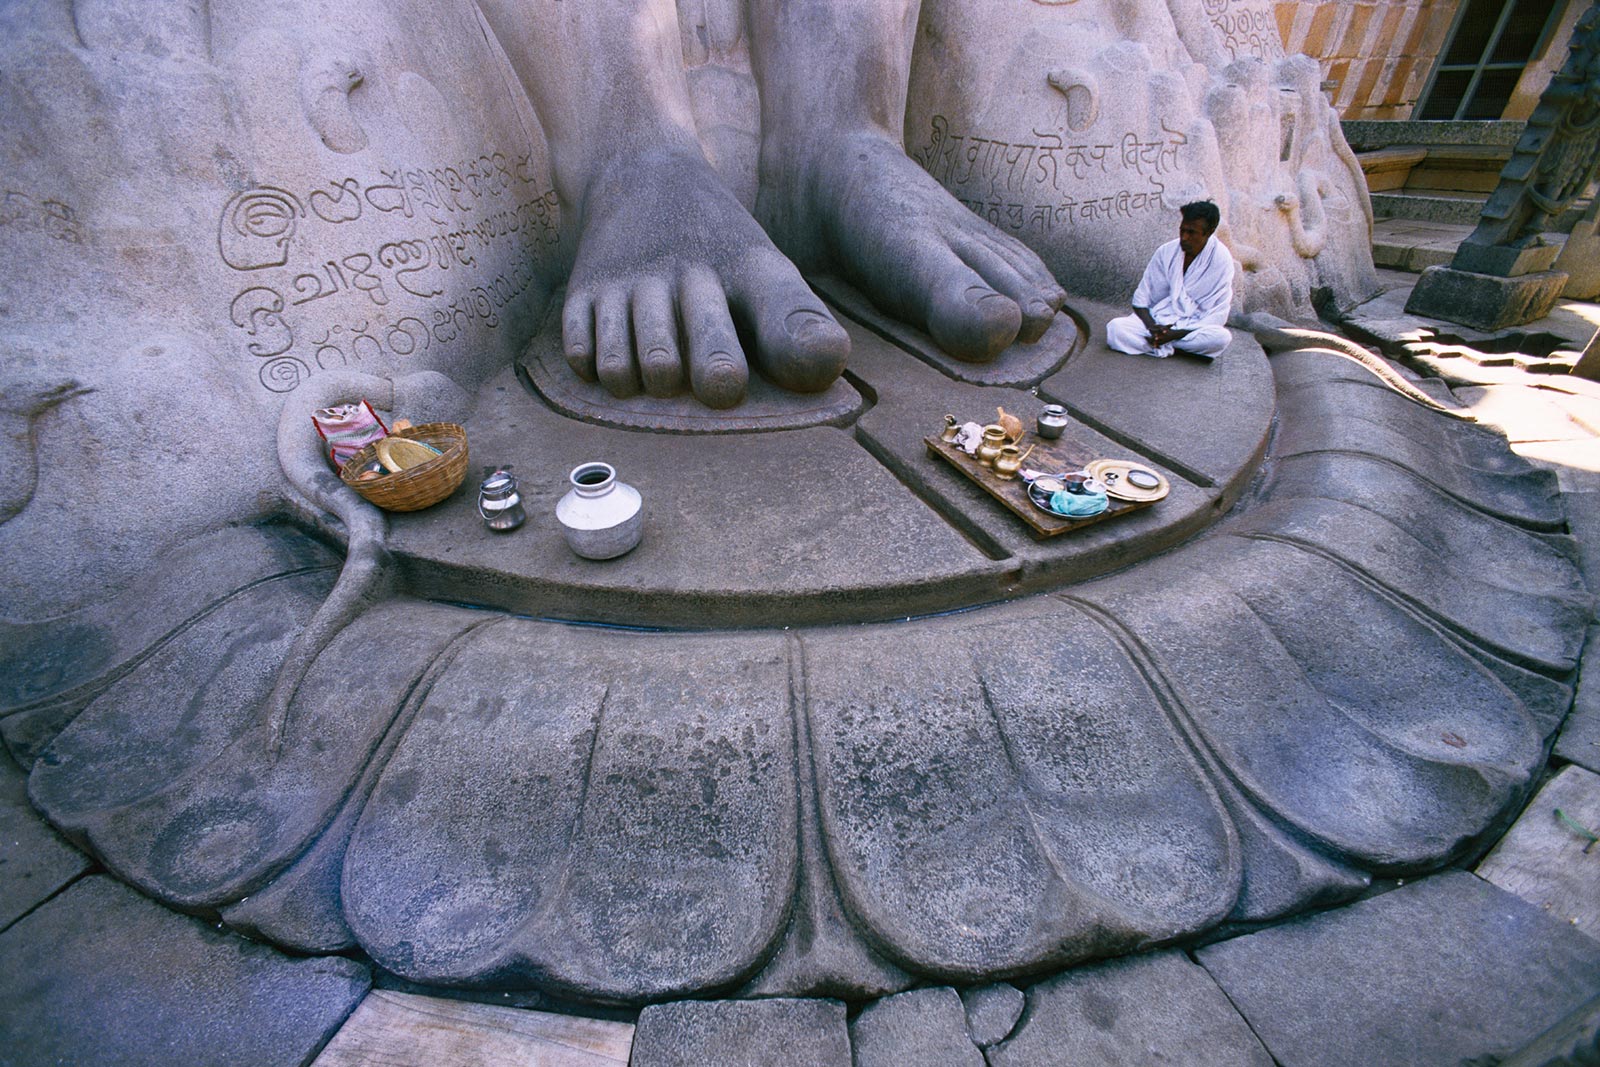 De Heilige Voeten van het Sri Gomatheswar-standbeeld, Shravanabelagola, India